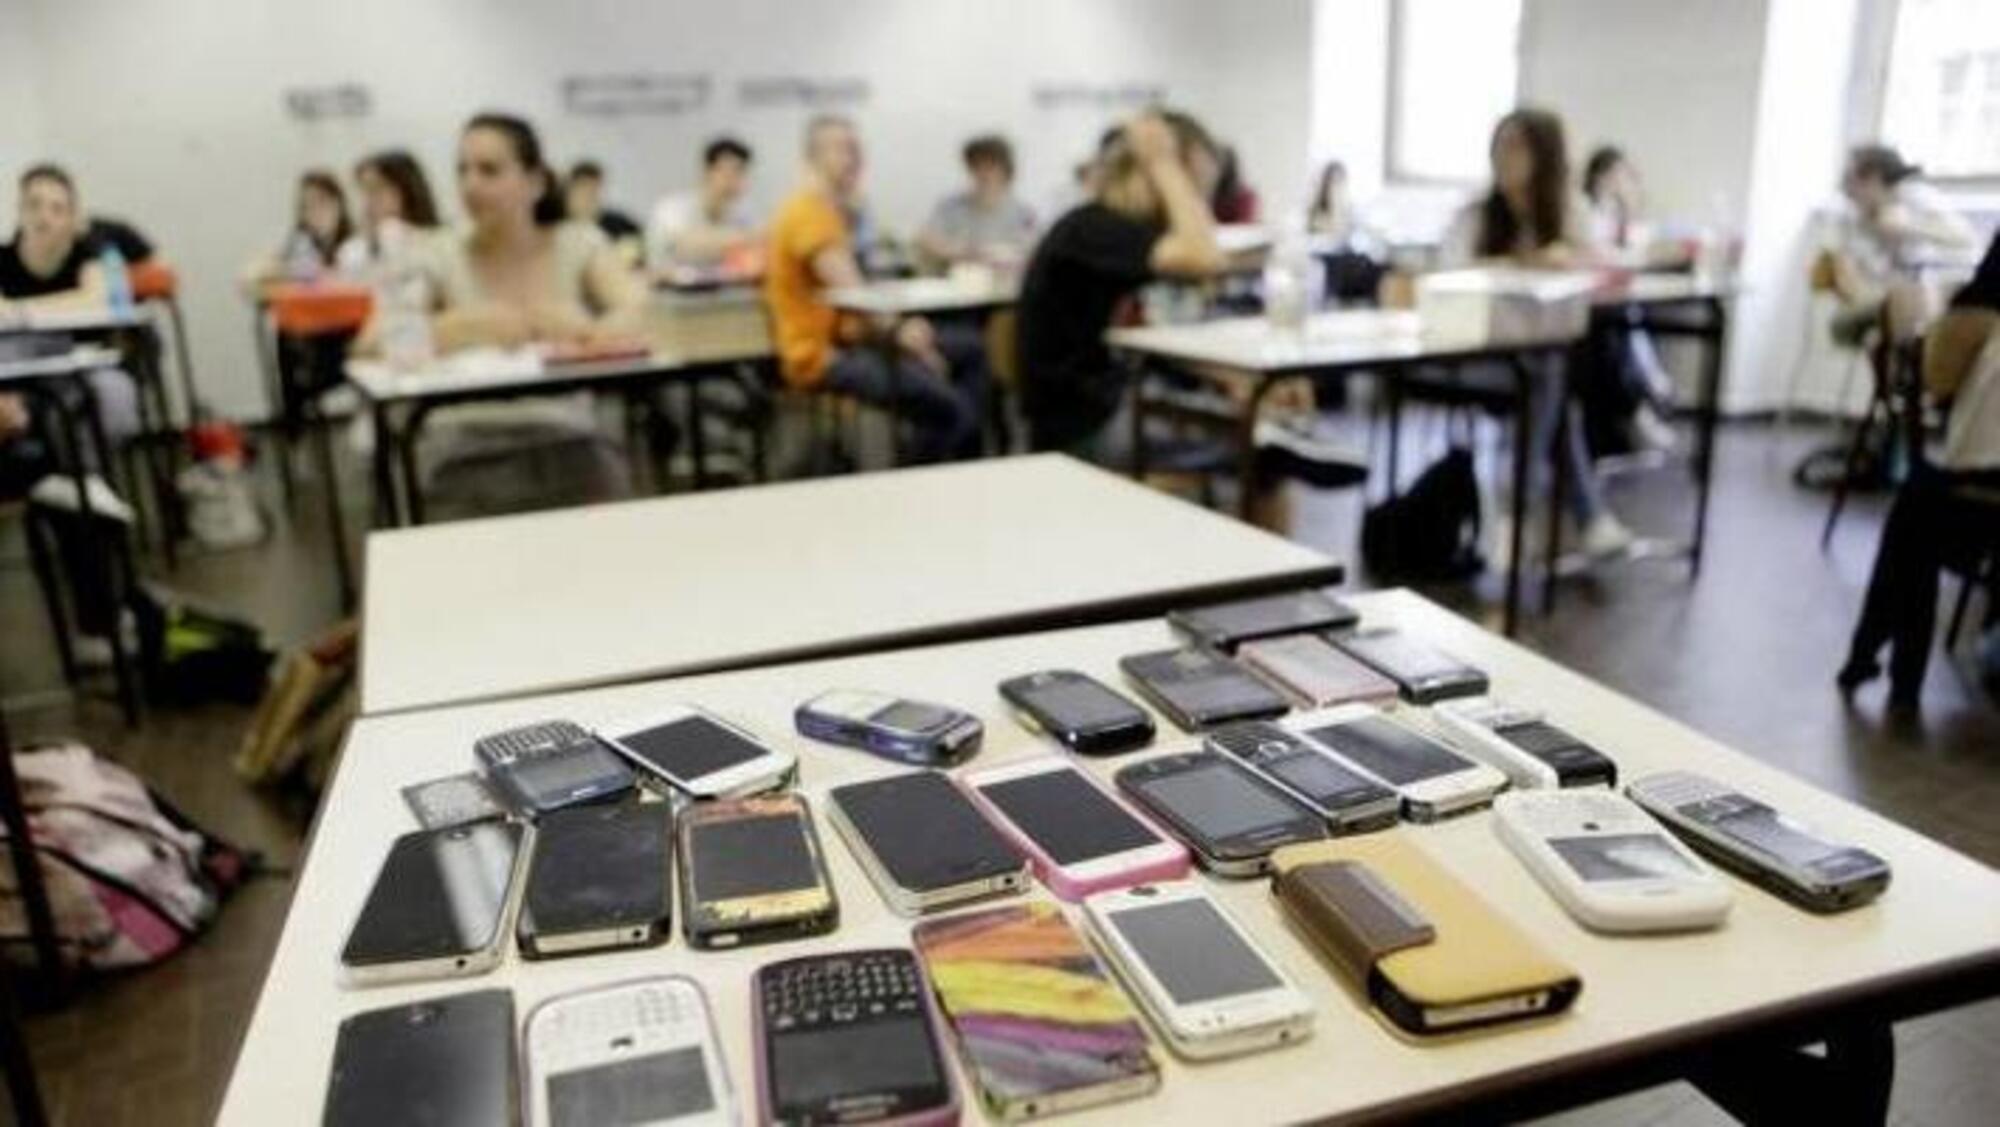 cellulari in classe, lo stop dal Ministero